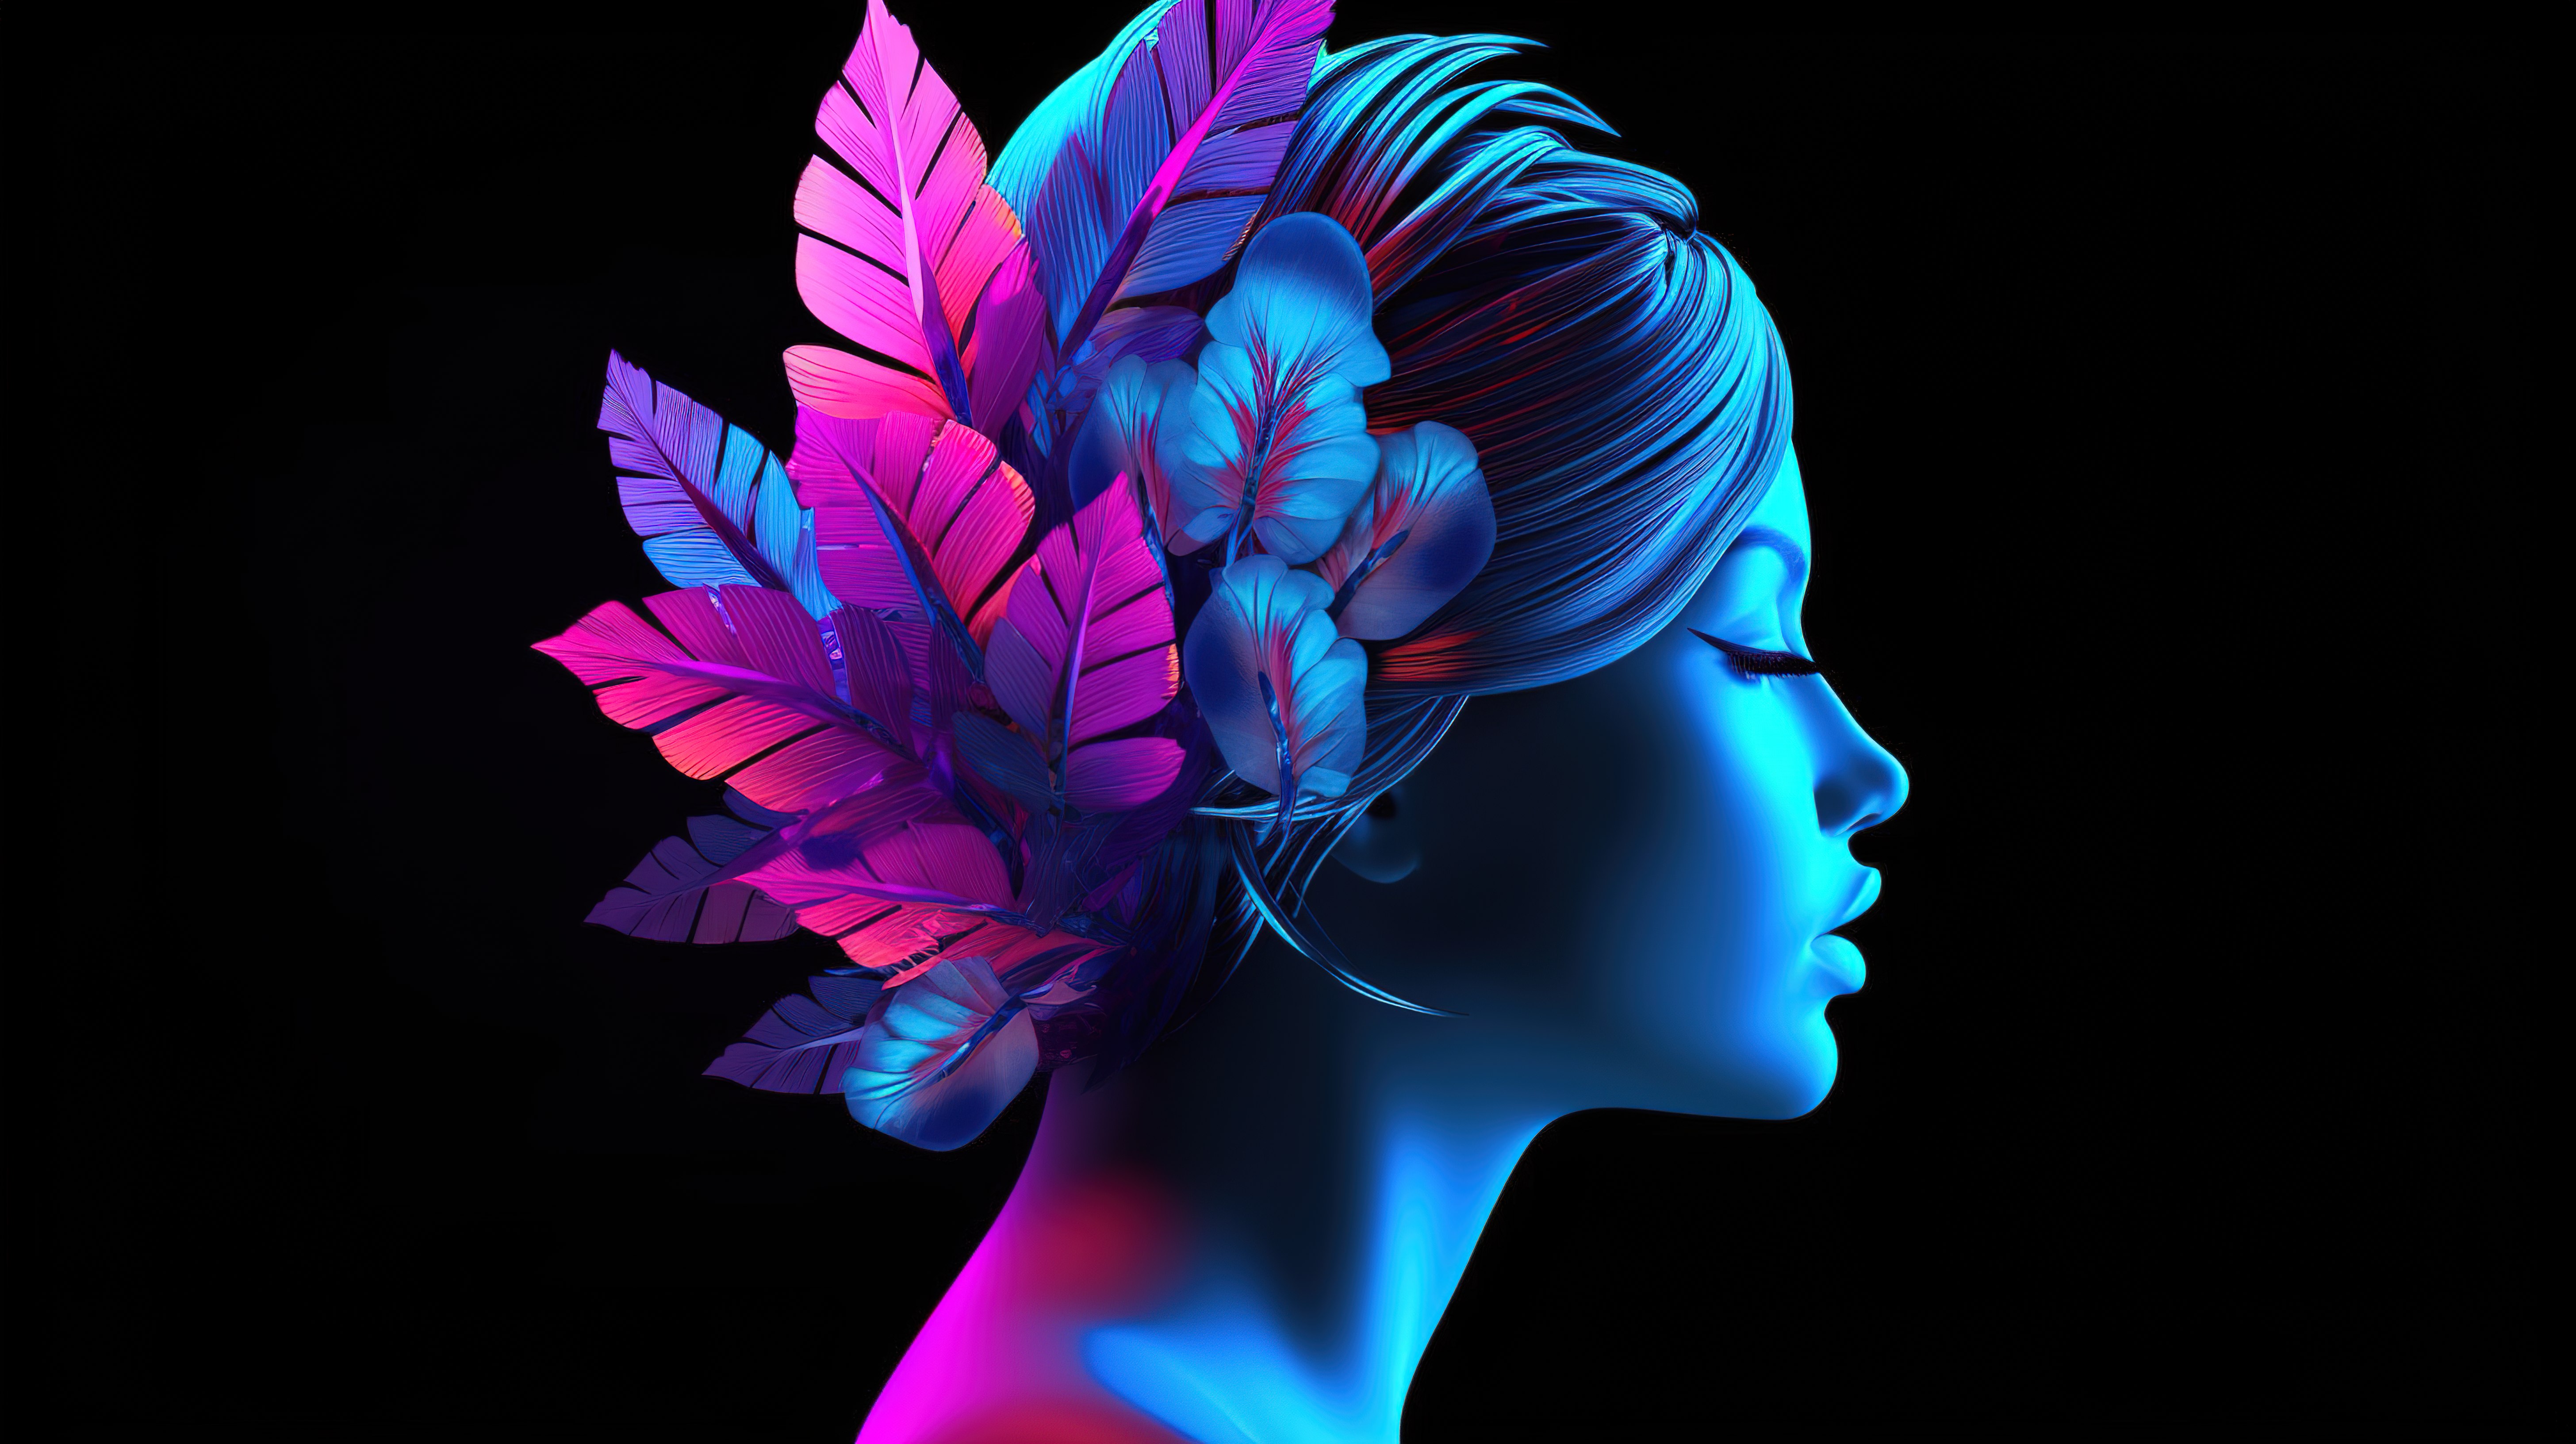 具有充满活力的紫外线蓝色和粉红色 3d 花瓣易洛魁设计的女性头像图片